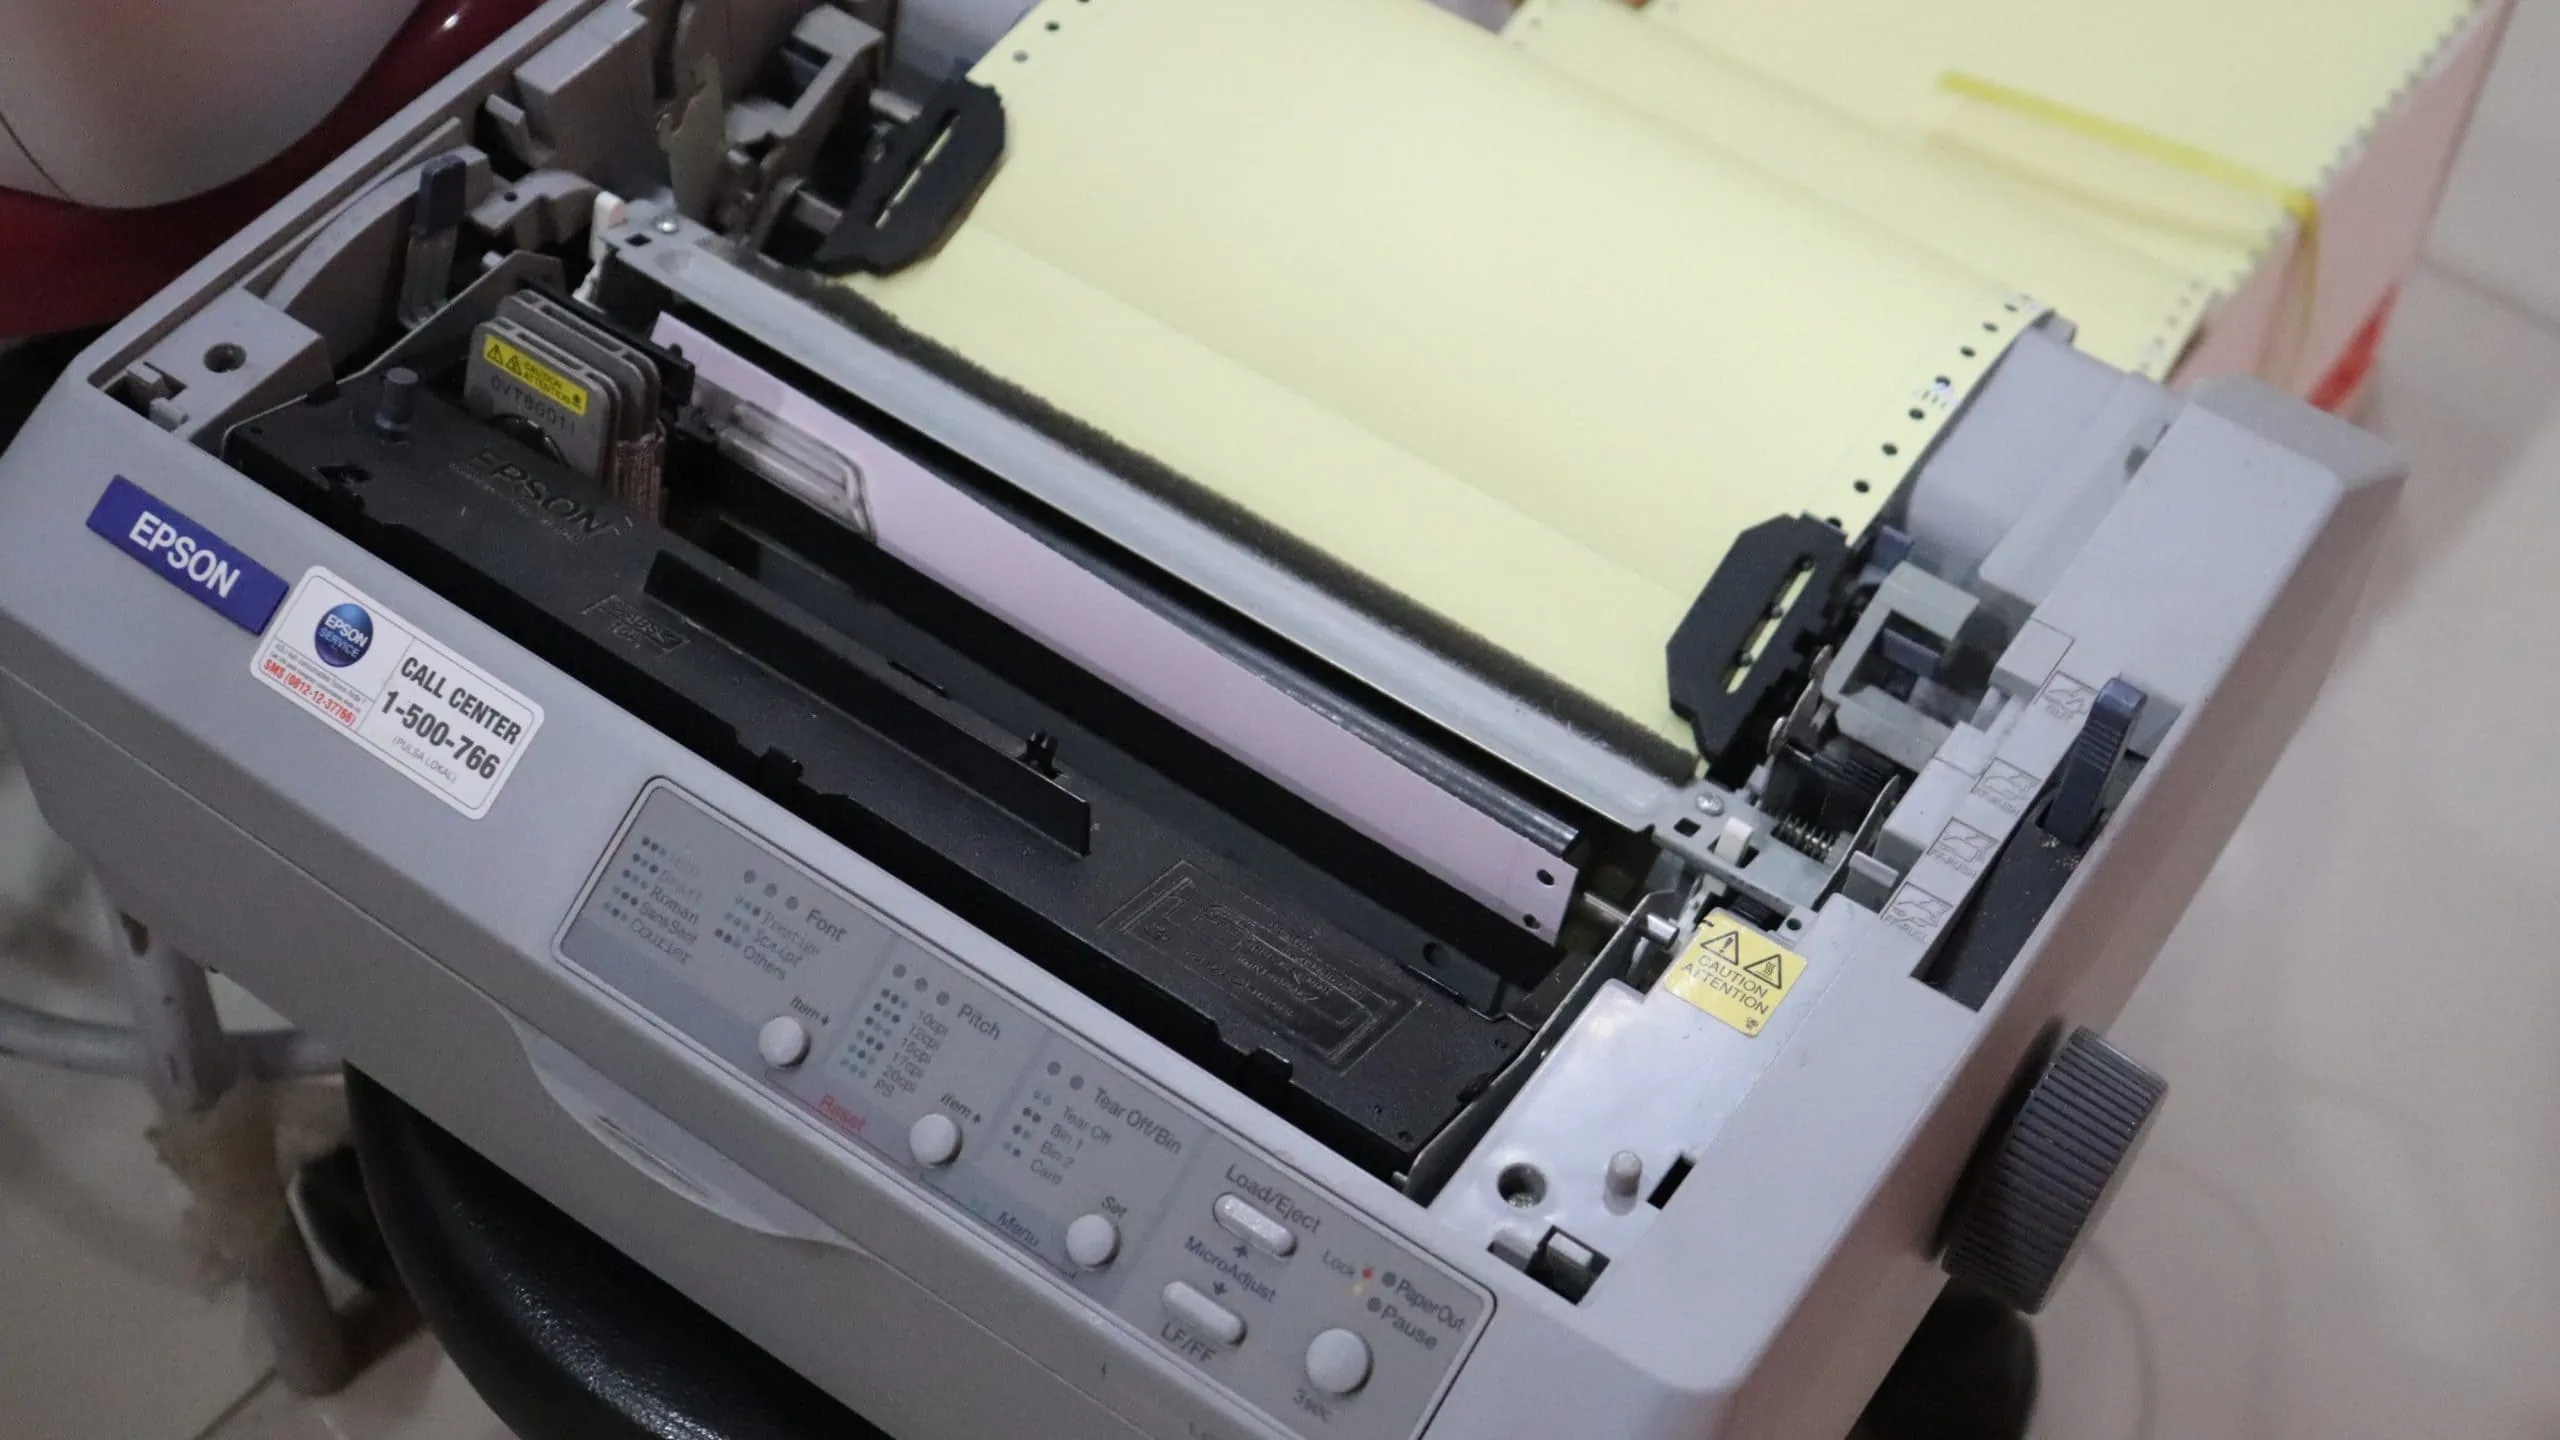 matrixprinter met geel papier